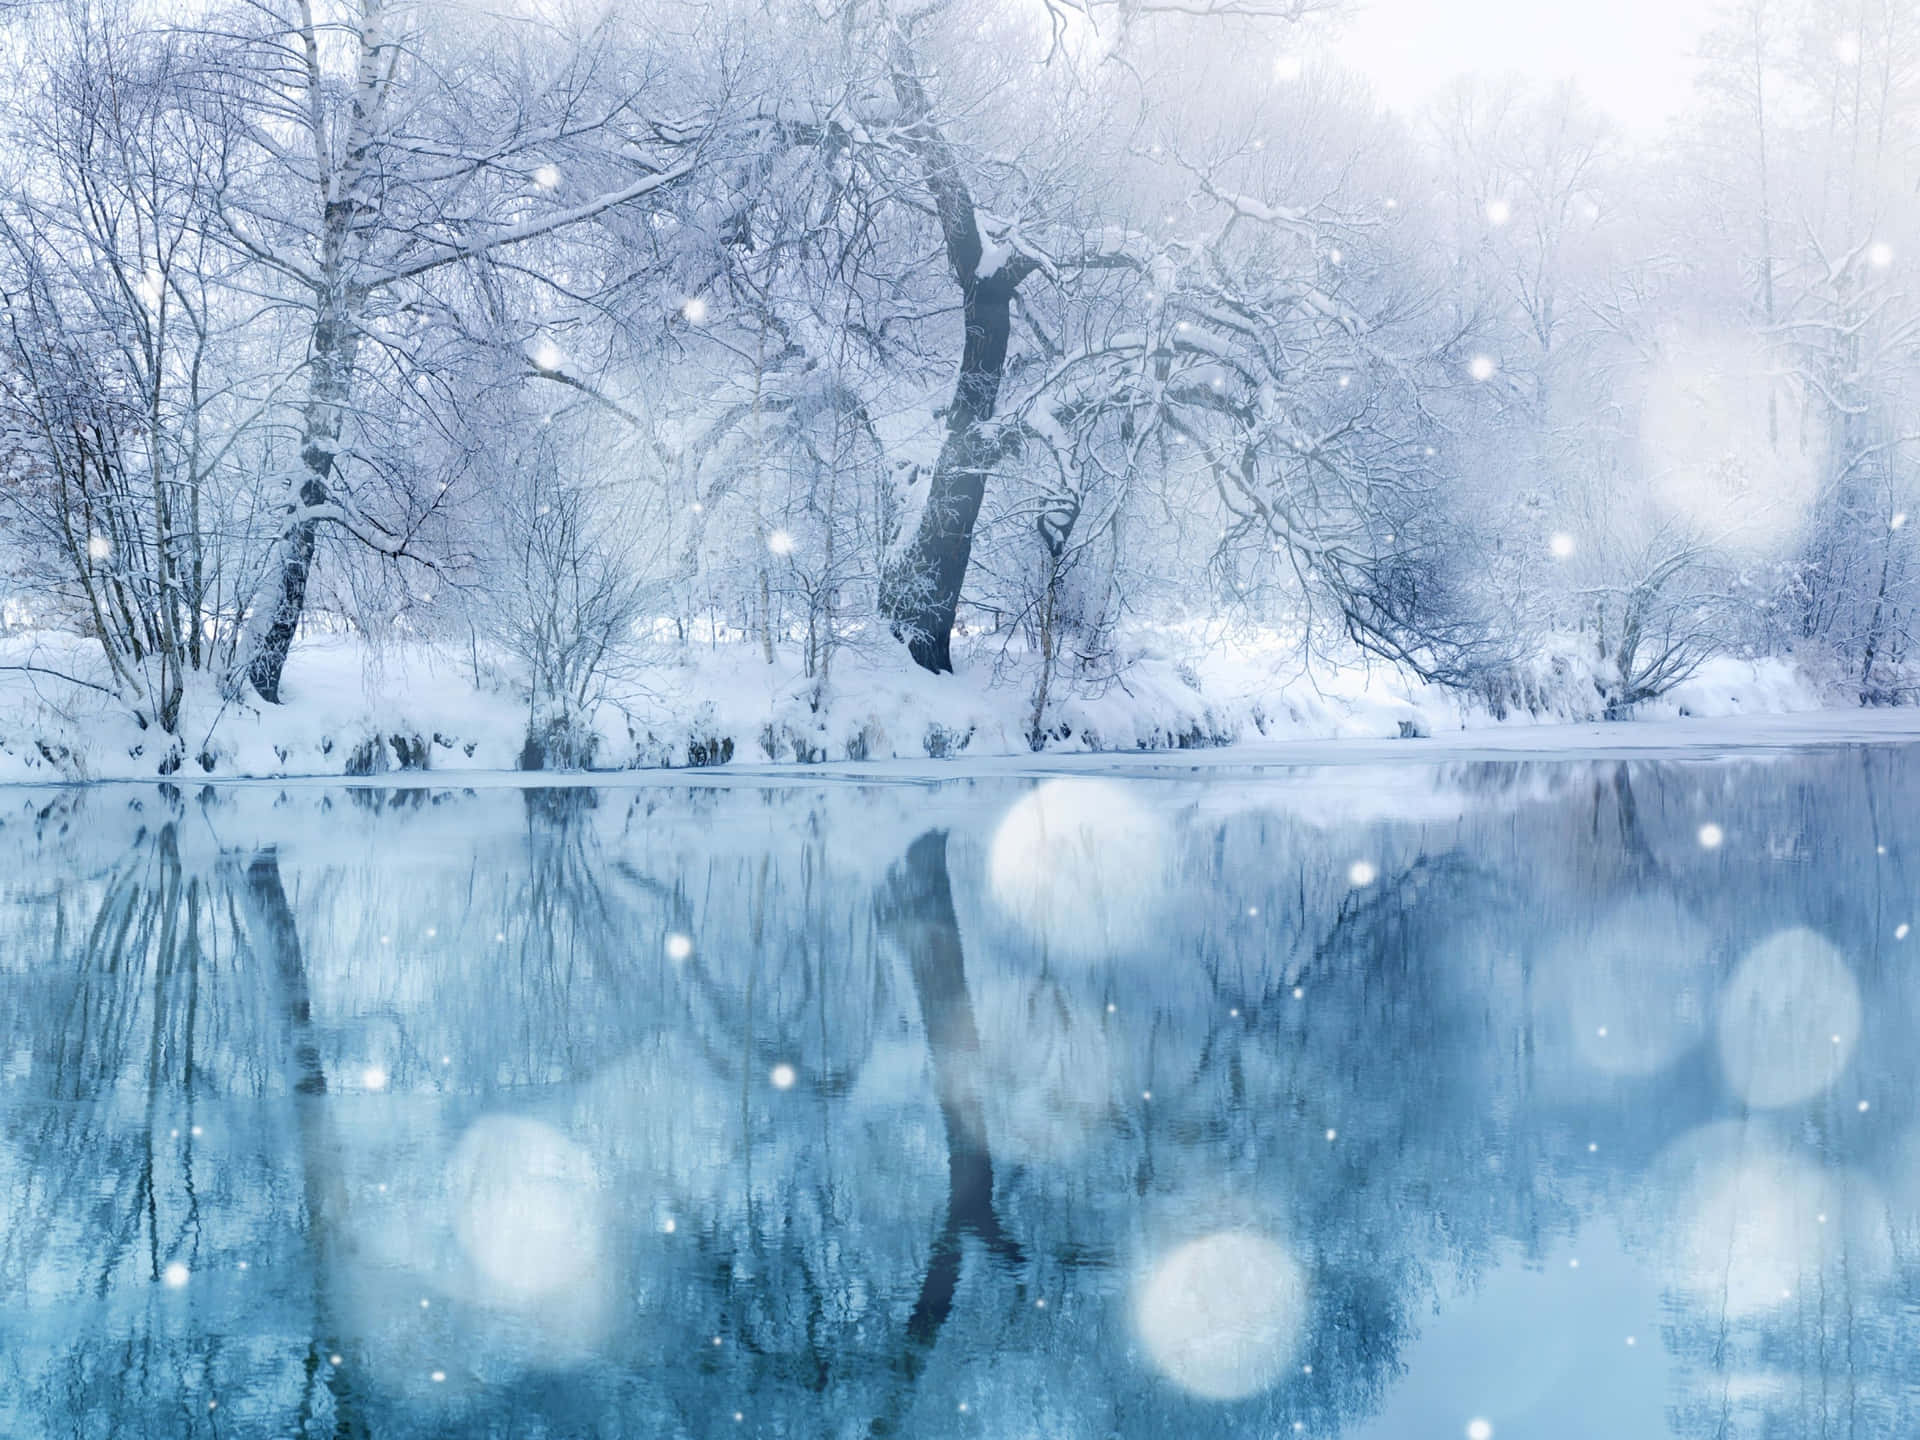 Breathtaking Winter Wonderland